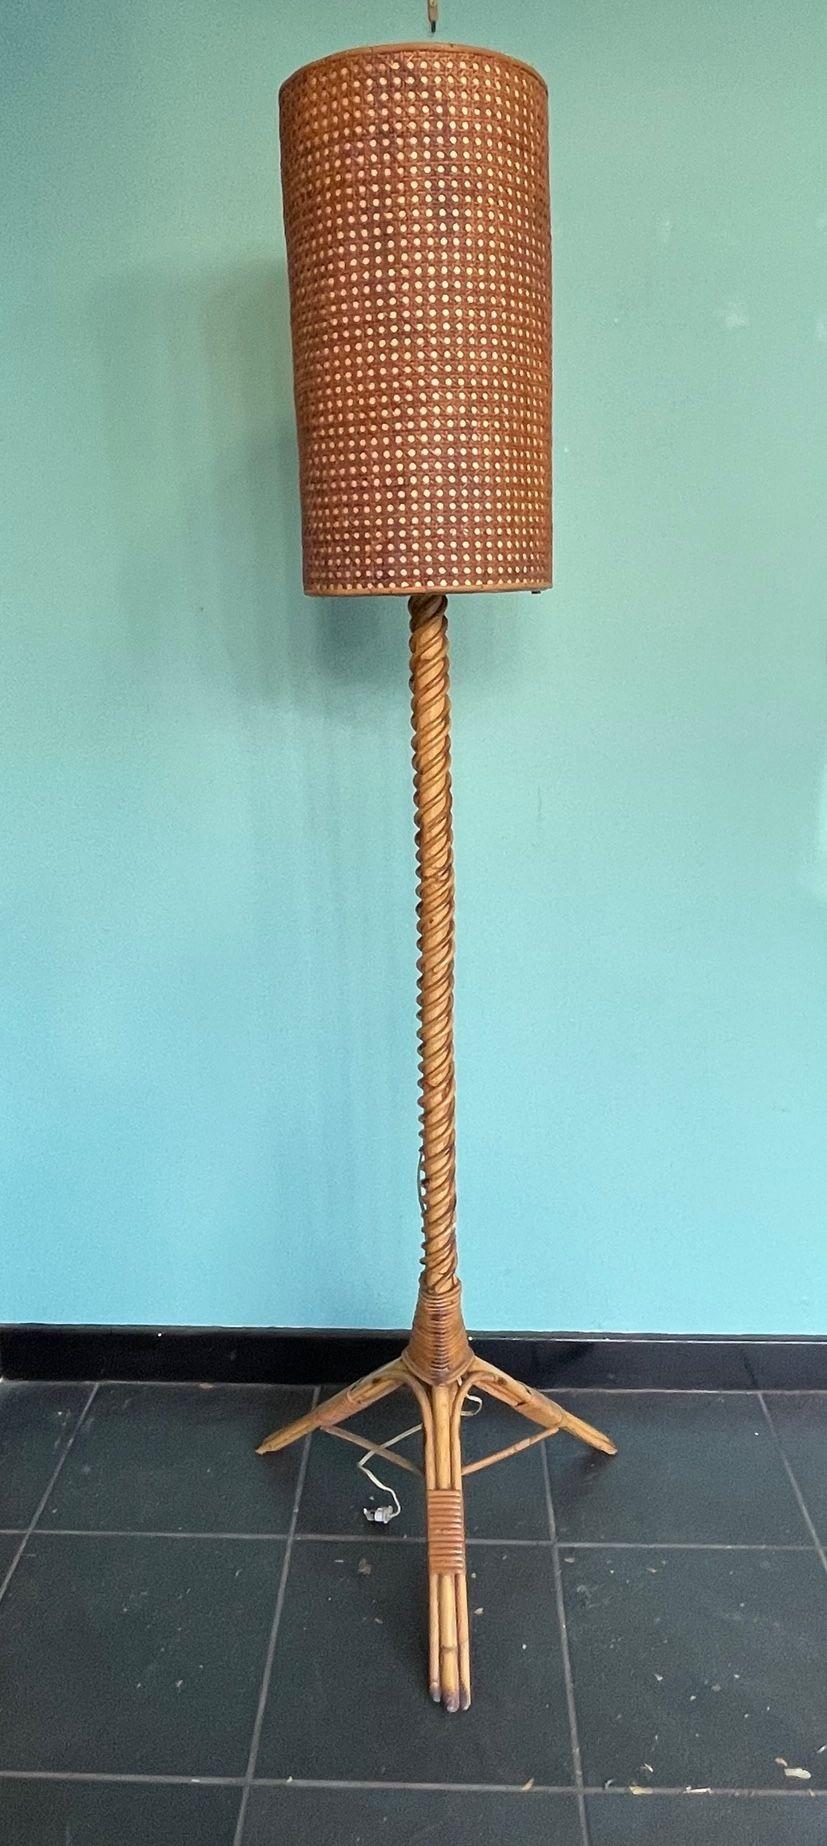 Magnifique lampadaire en bambou des années 1960 de Louis Sognot, avec tige en bambou enroulée et abat-jour en rotin et parchemin. Recâblage avec un cordon flexible antique et testé selon la norme PAT